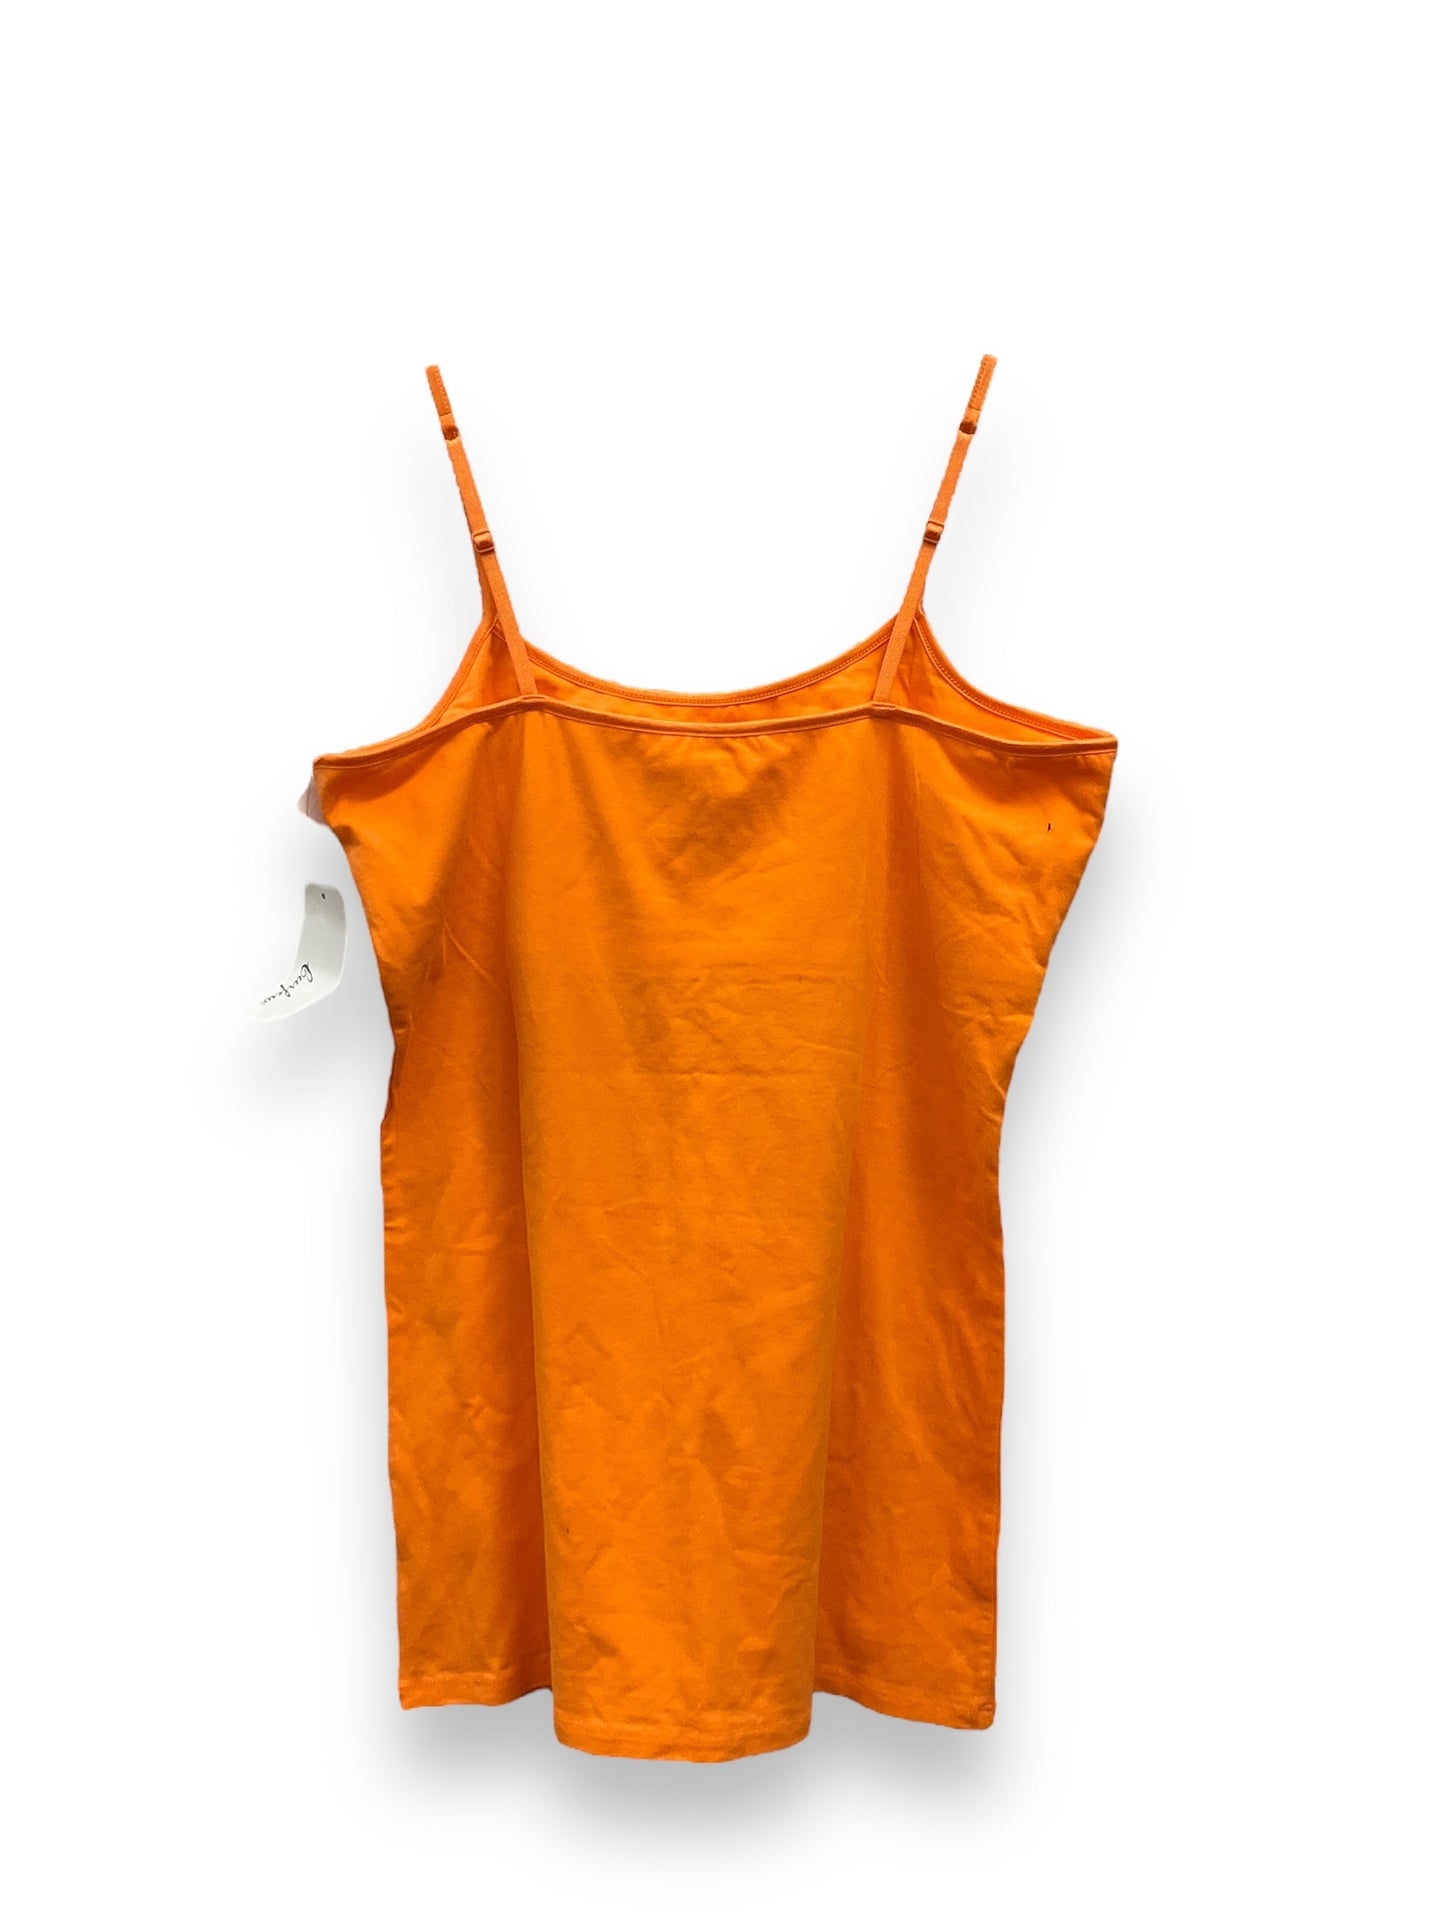 Orange Top Cami Clothes Mentor, Size Xl